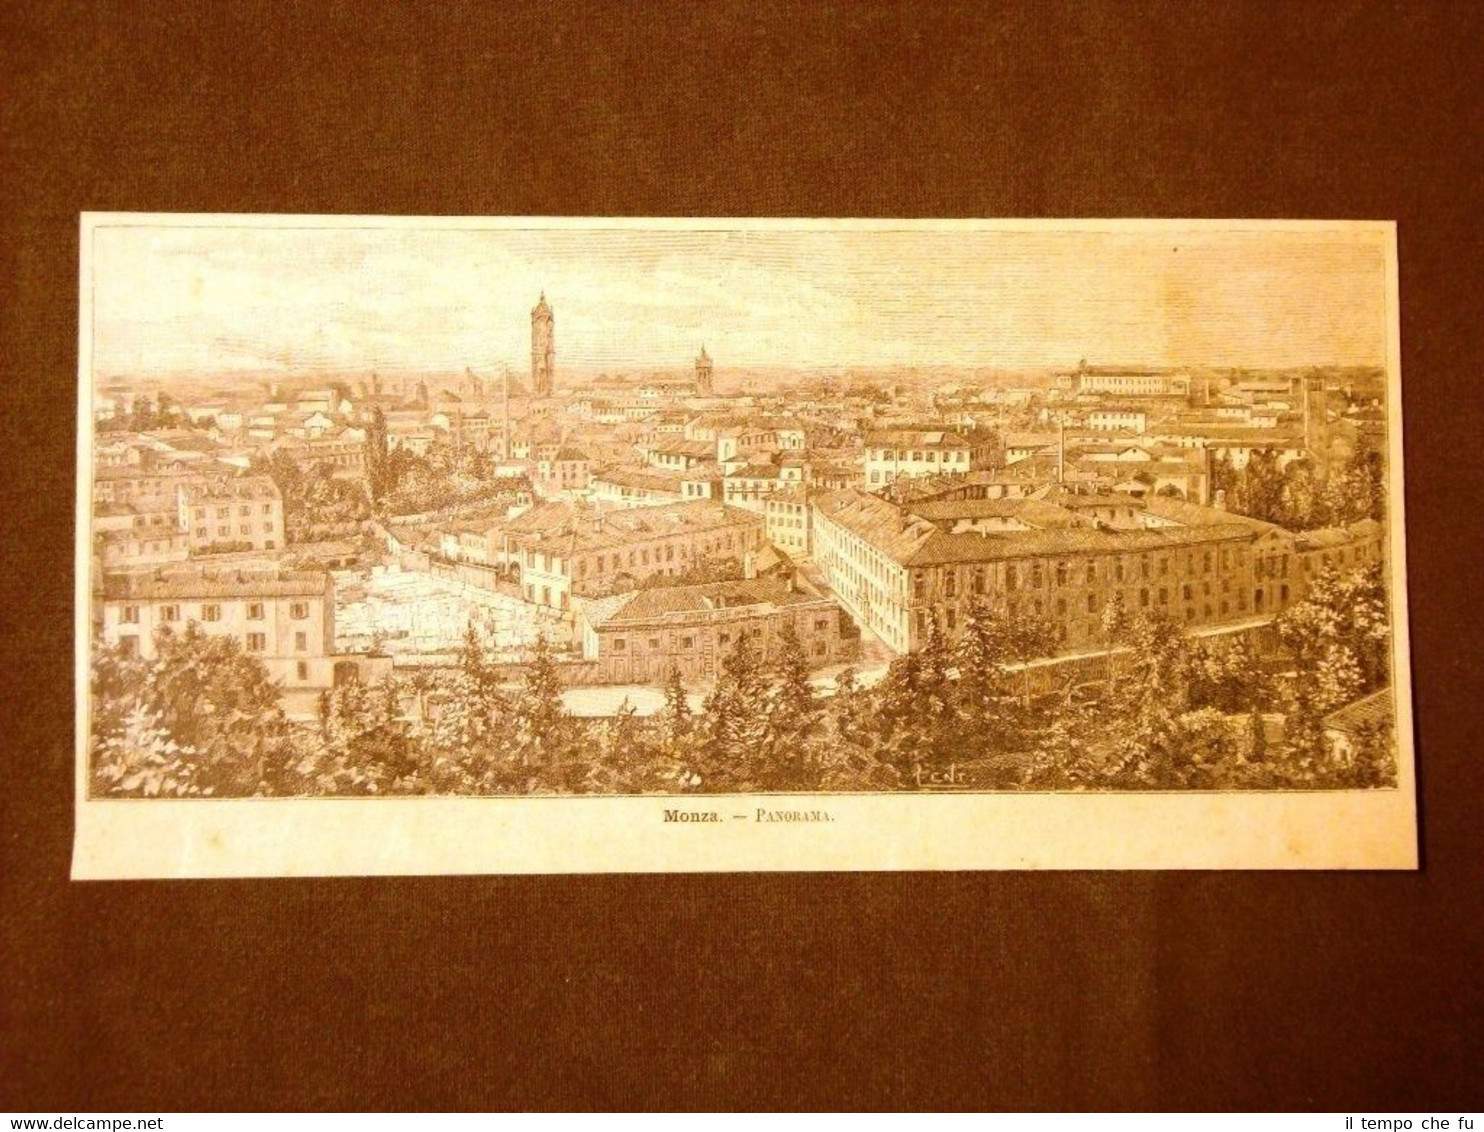 Incisione del 1891 Rarissimo panorama di Monza - Lombardia